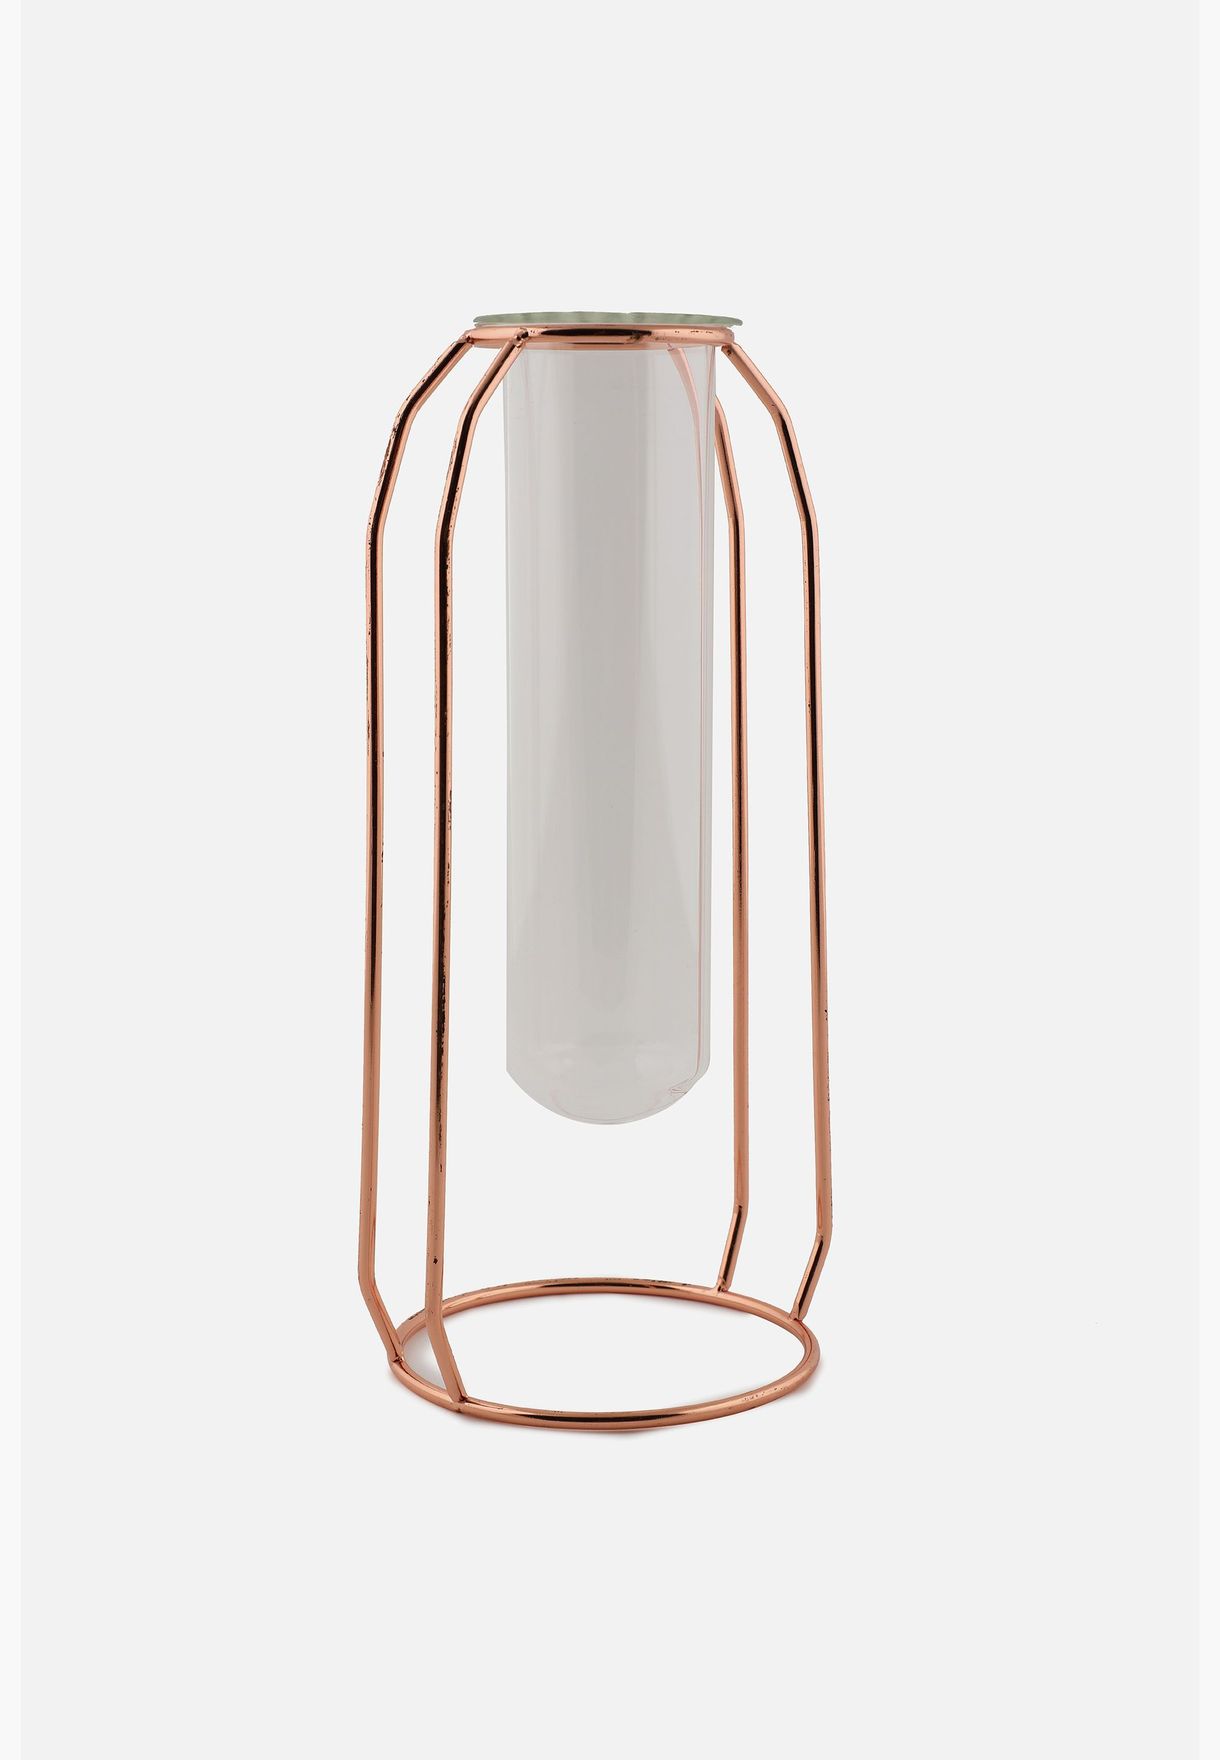 Sqaure Shaped Modern Glass Test Tube Metal Flower Vase For Home Decor 